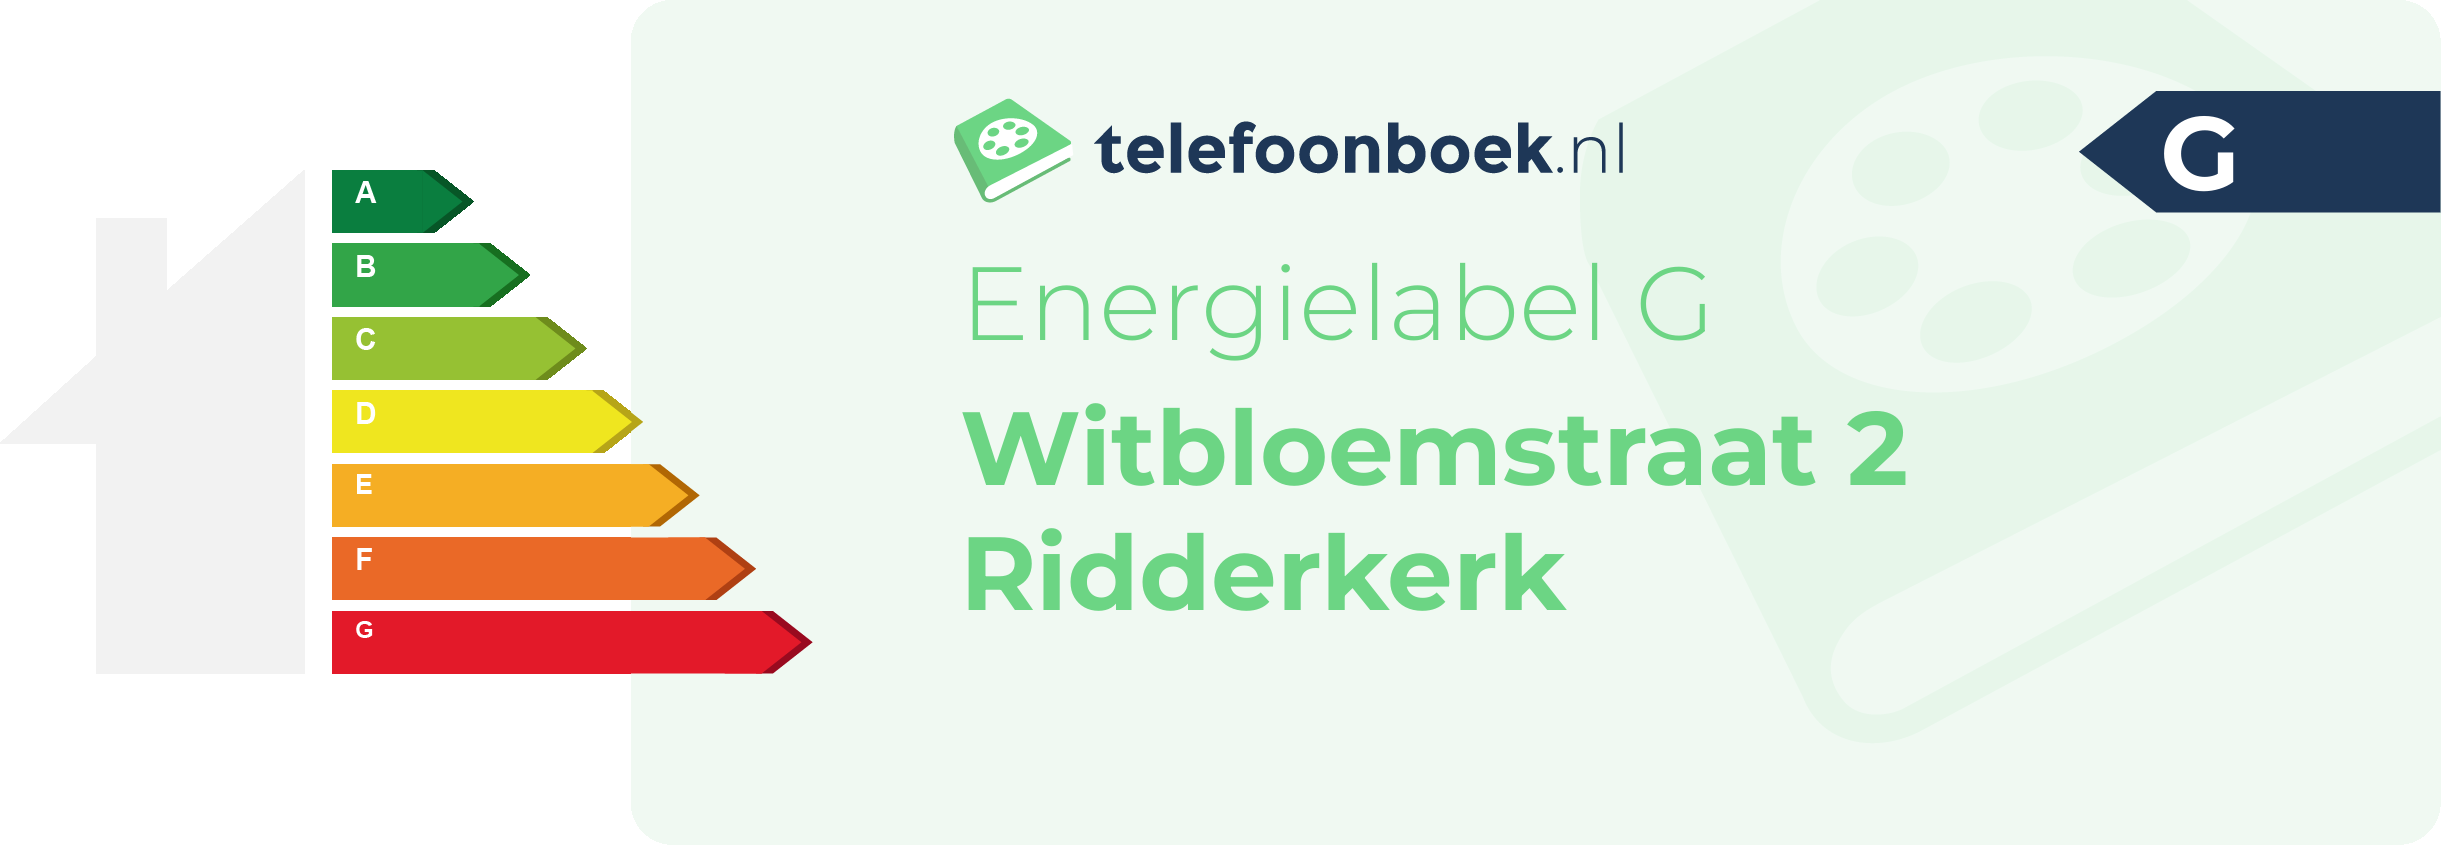 Energielabel Witbloemstraat 2 Ridderkerk